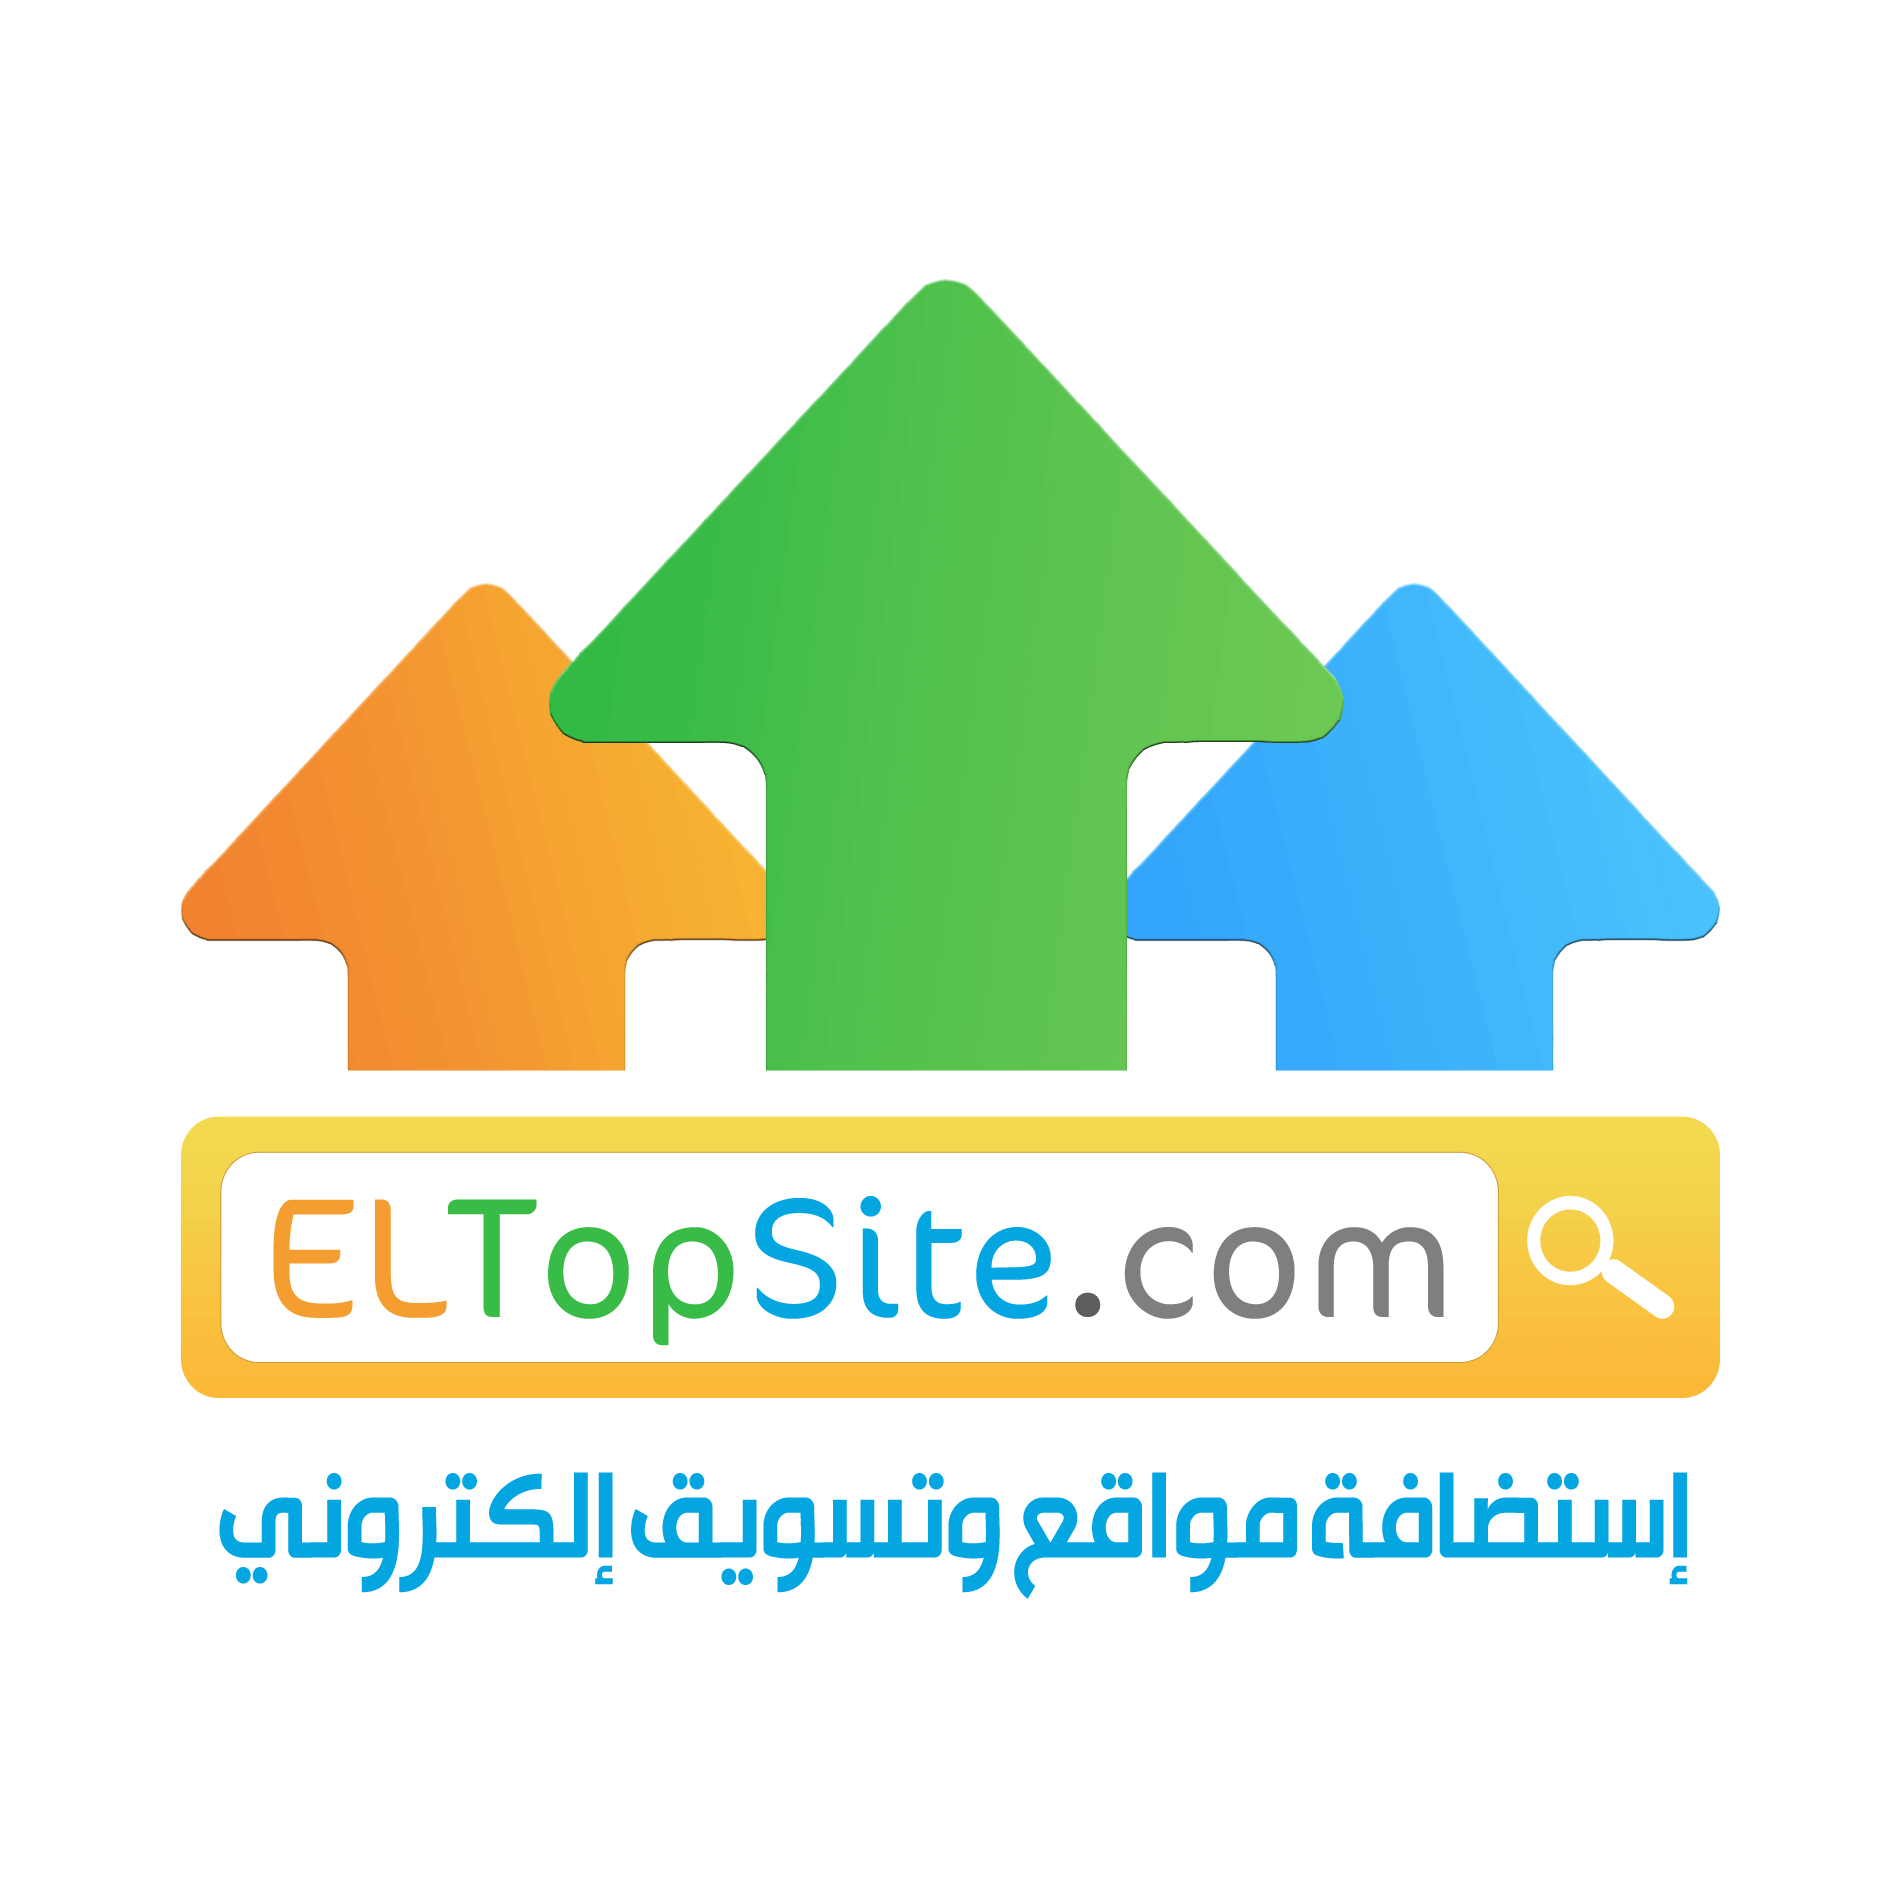 eltopsite.com التوب سايت